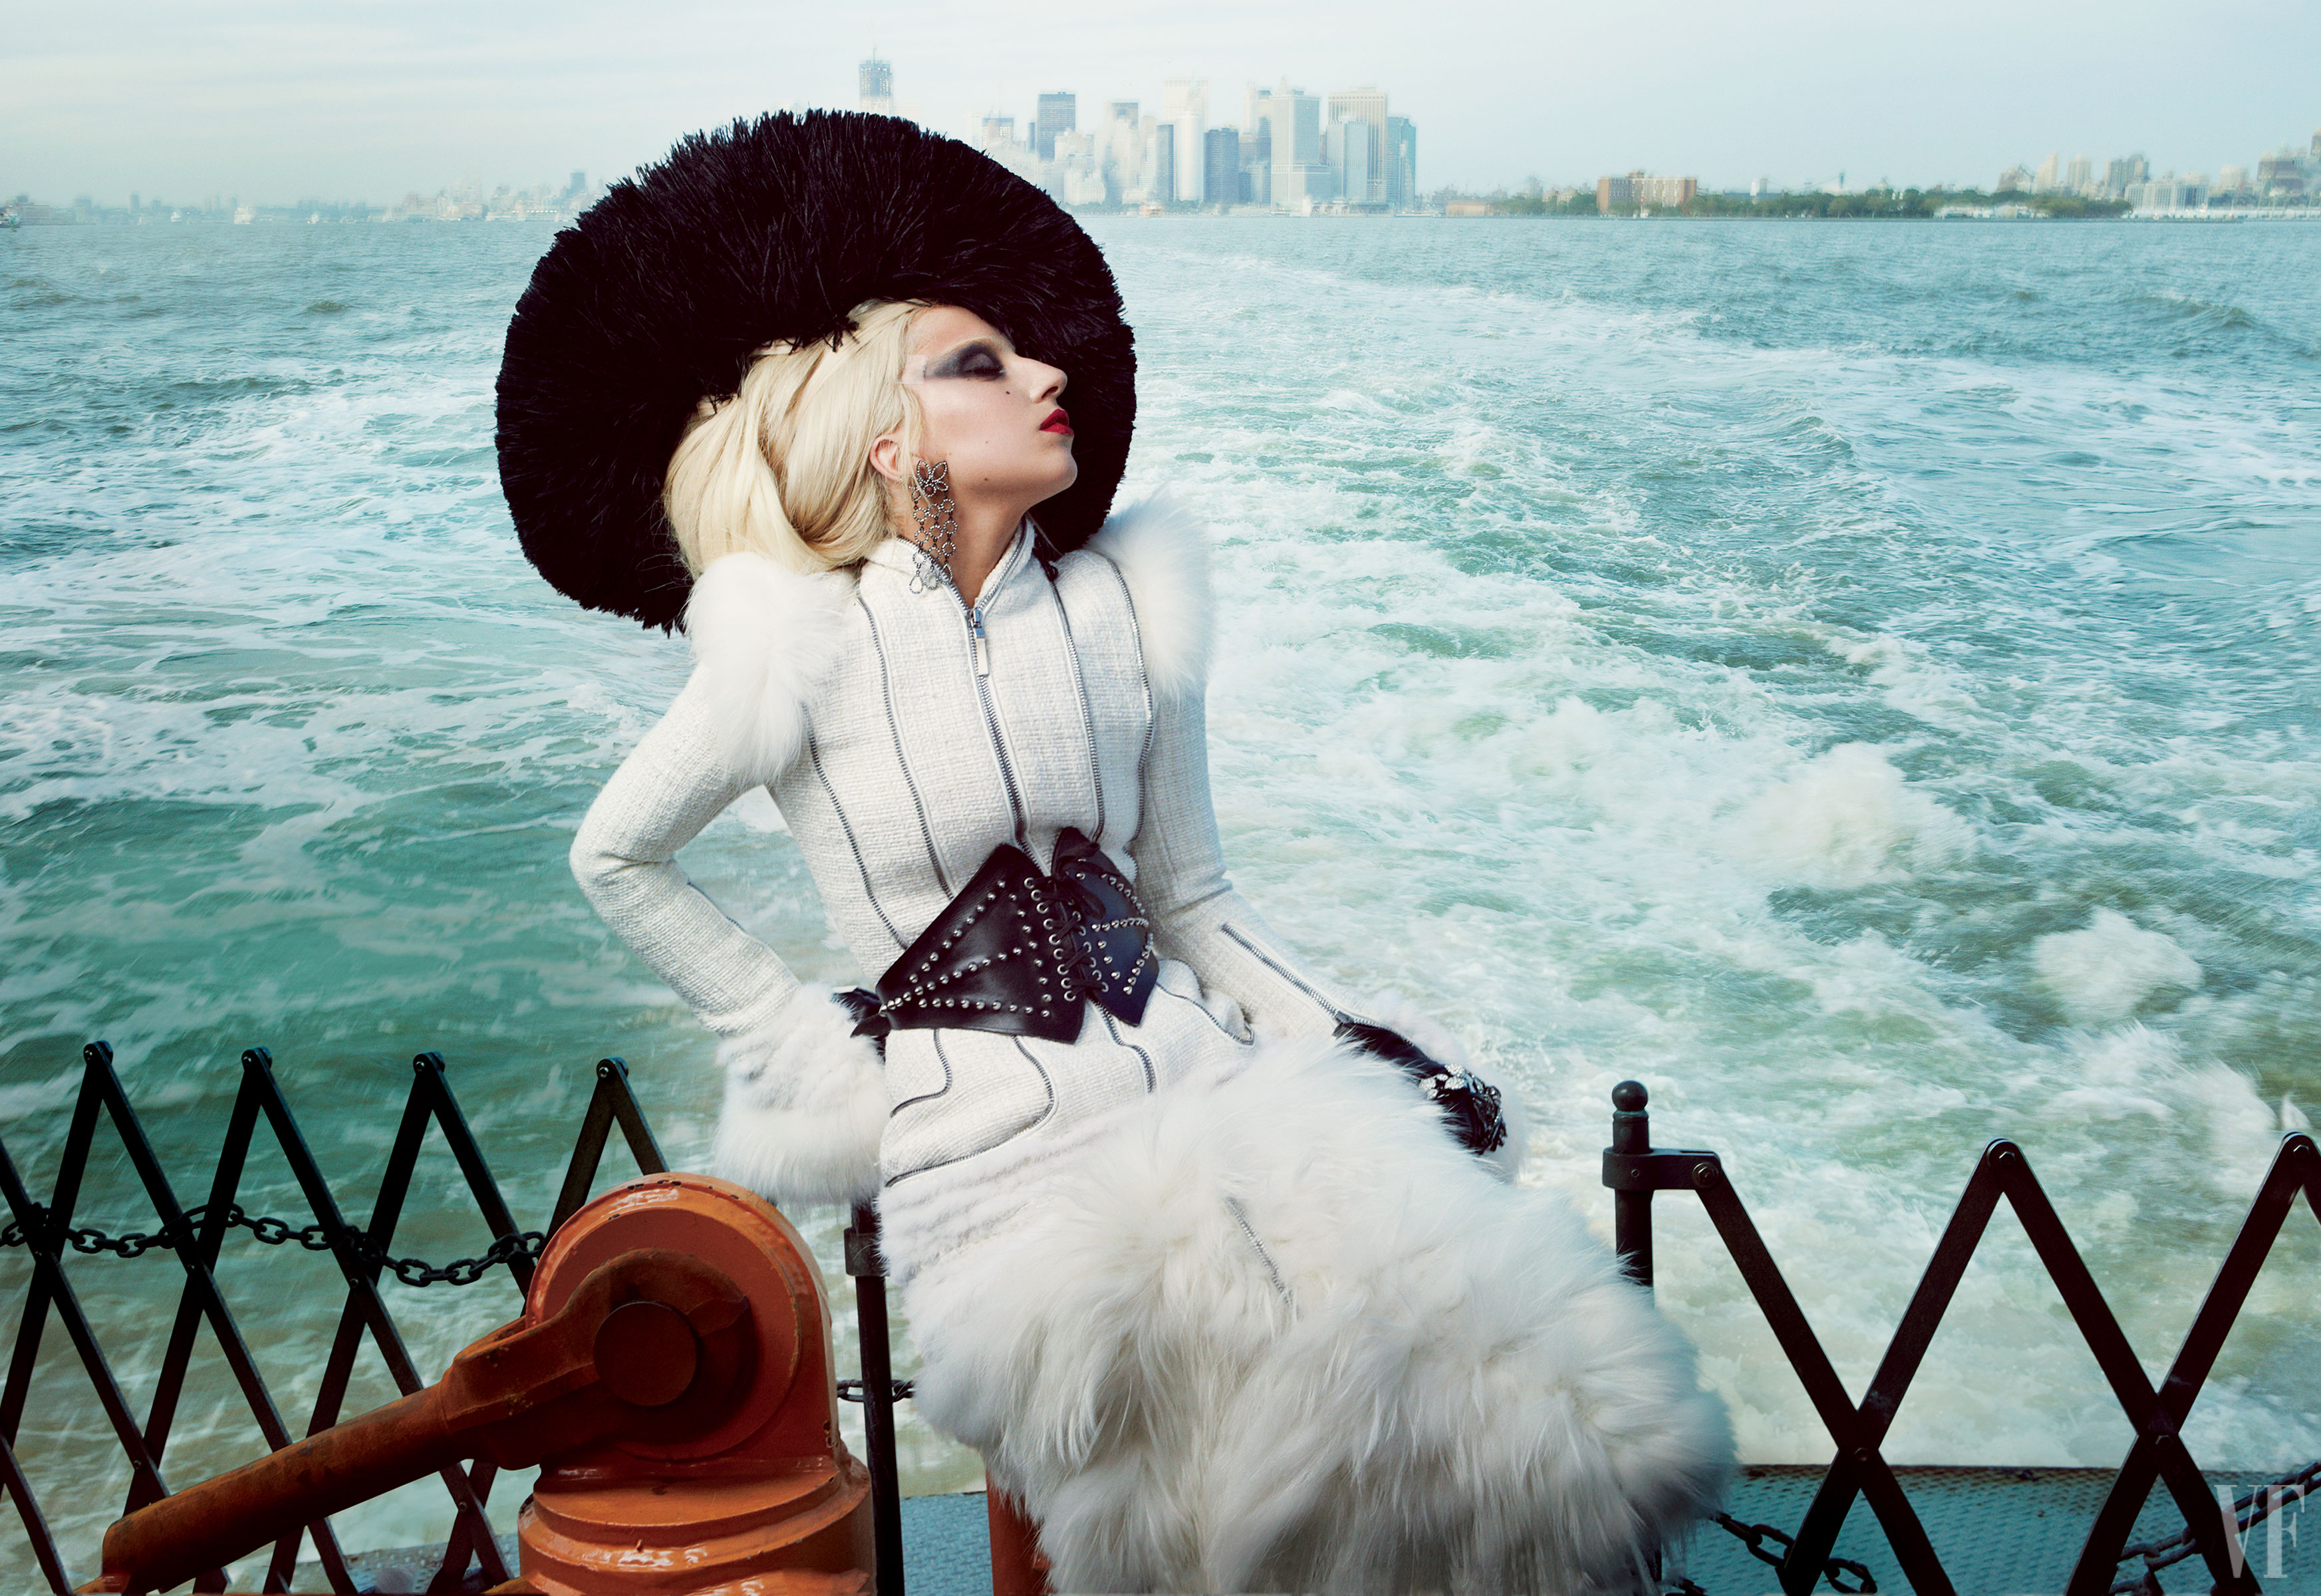 Vanity_Fair_Lady_Gaga_ferry